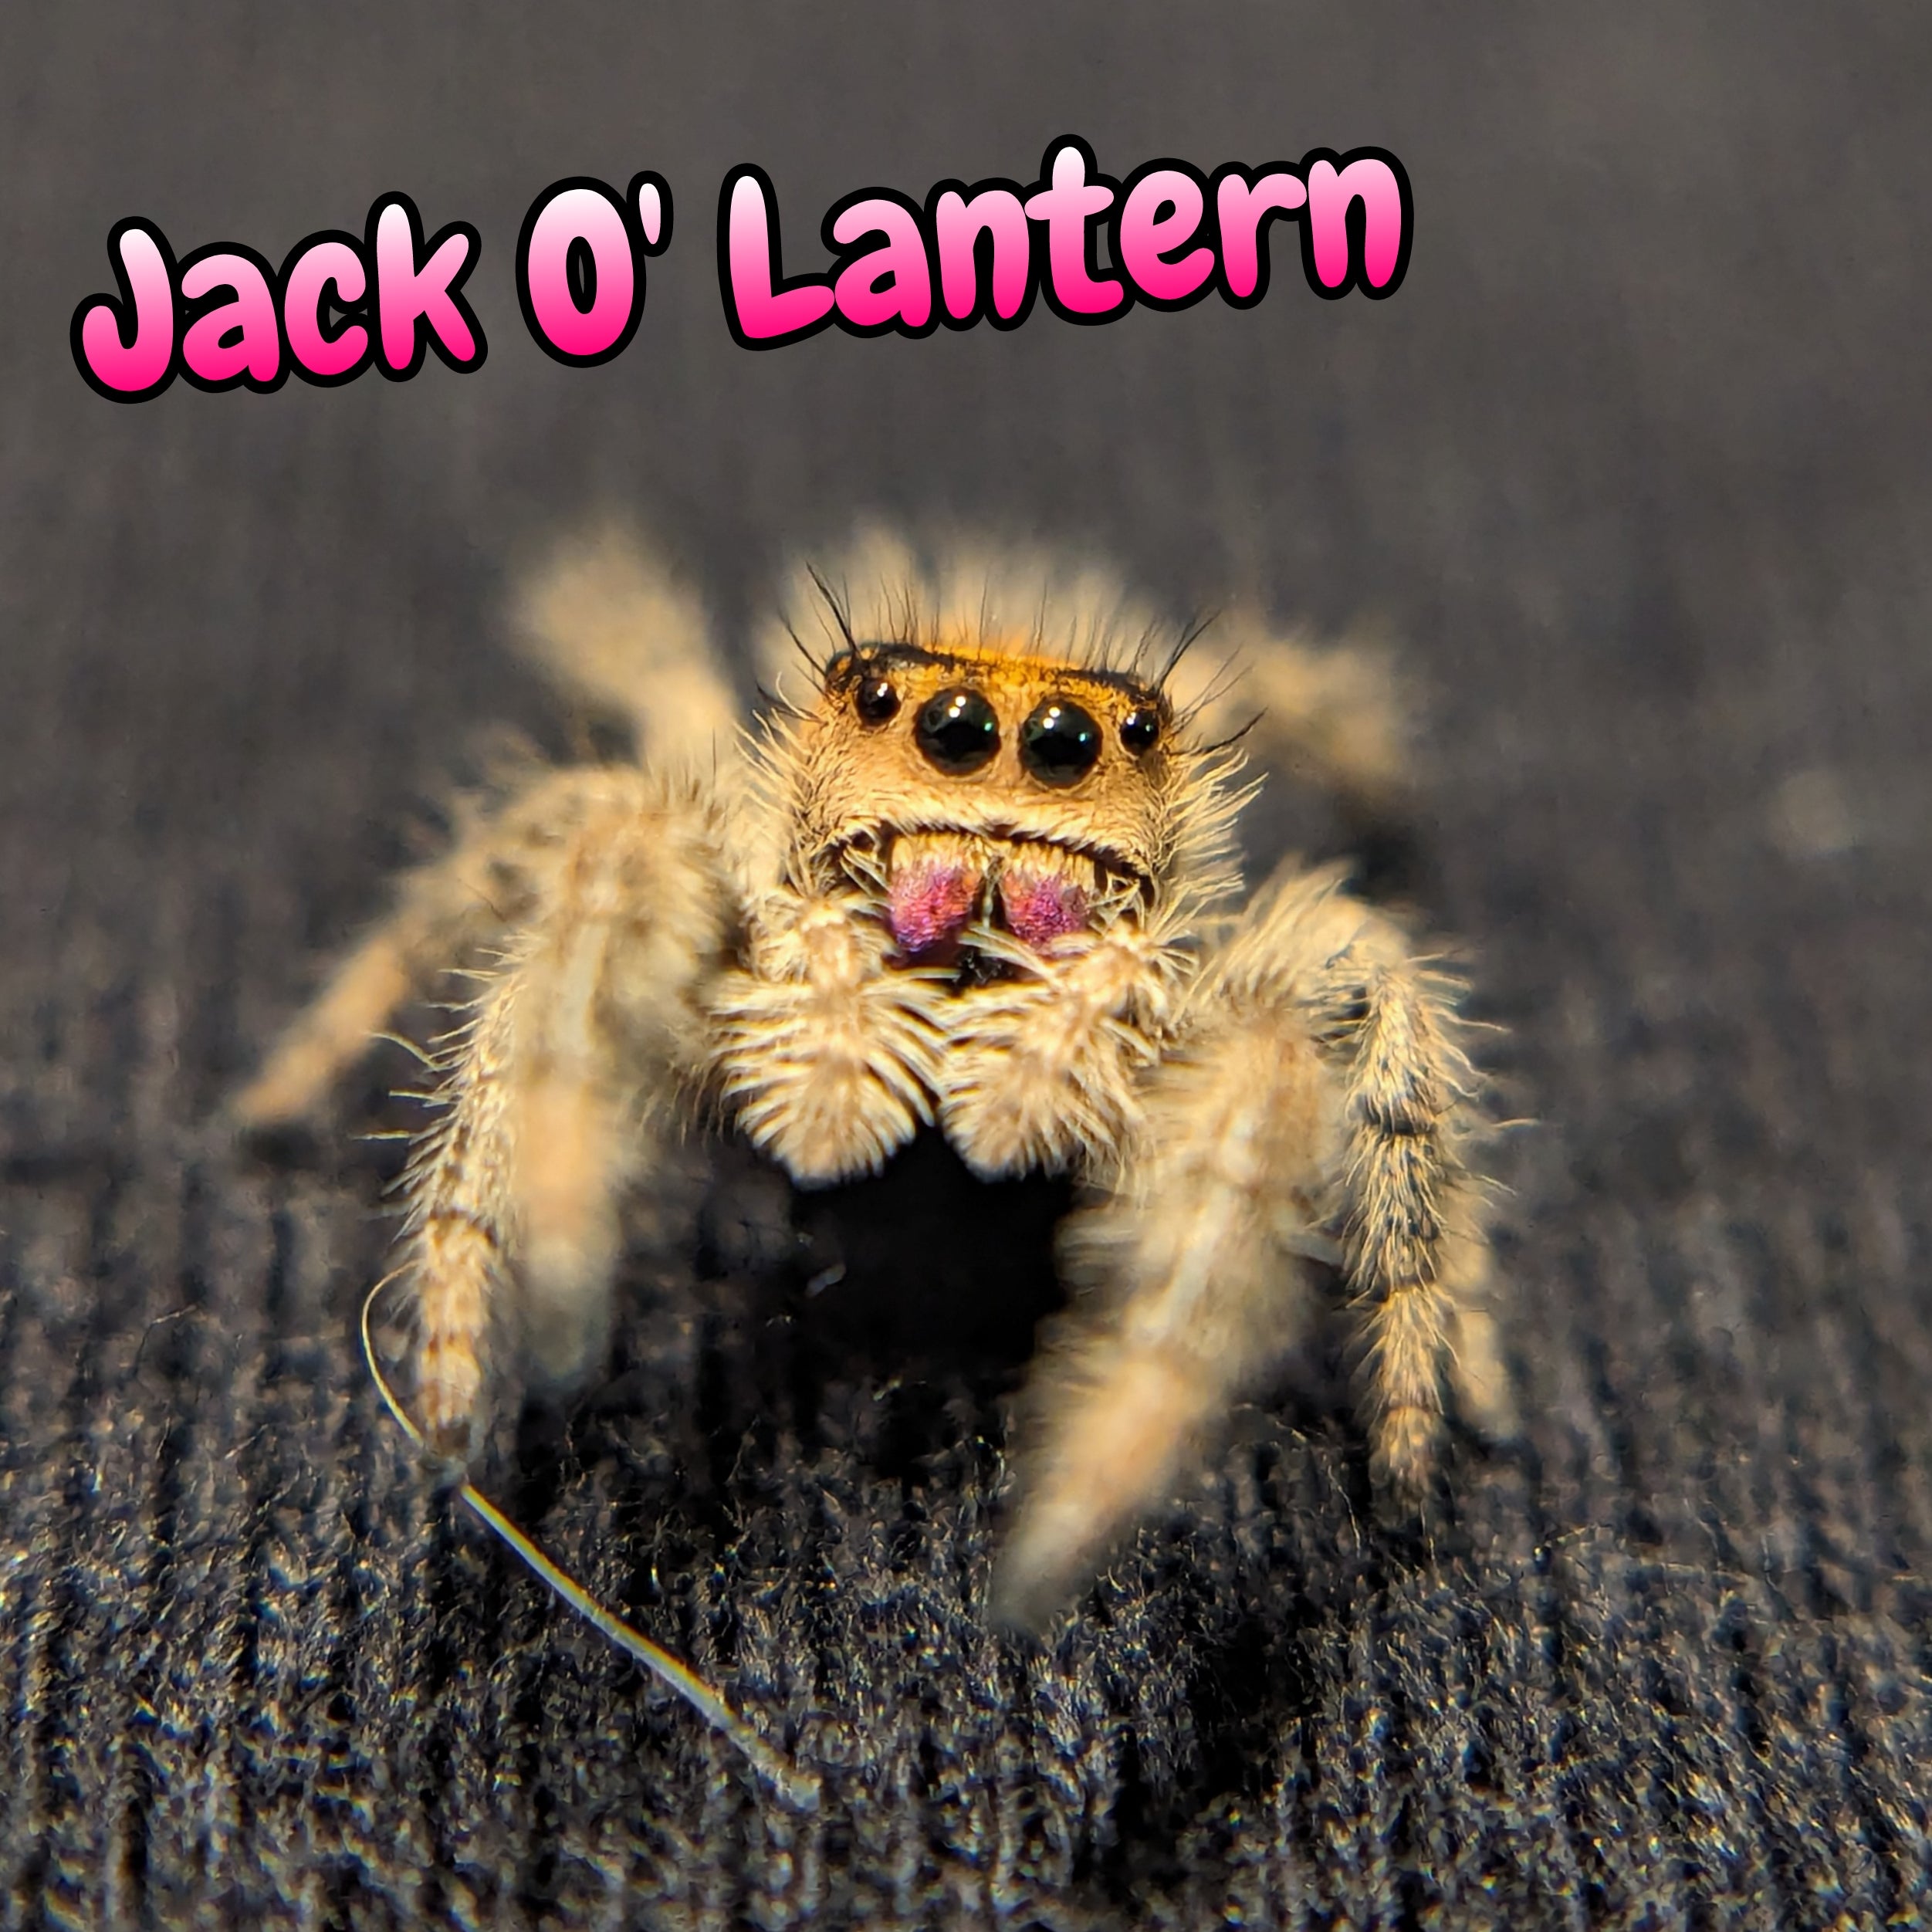 Regal Jumping Spider "Jack O' Lantern"